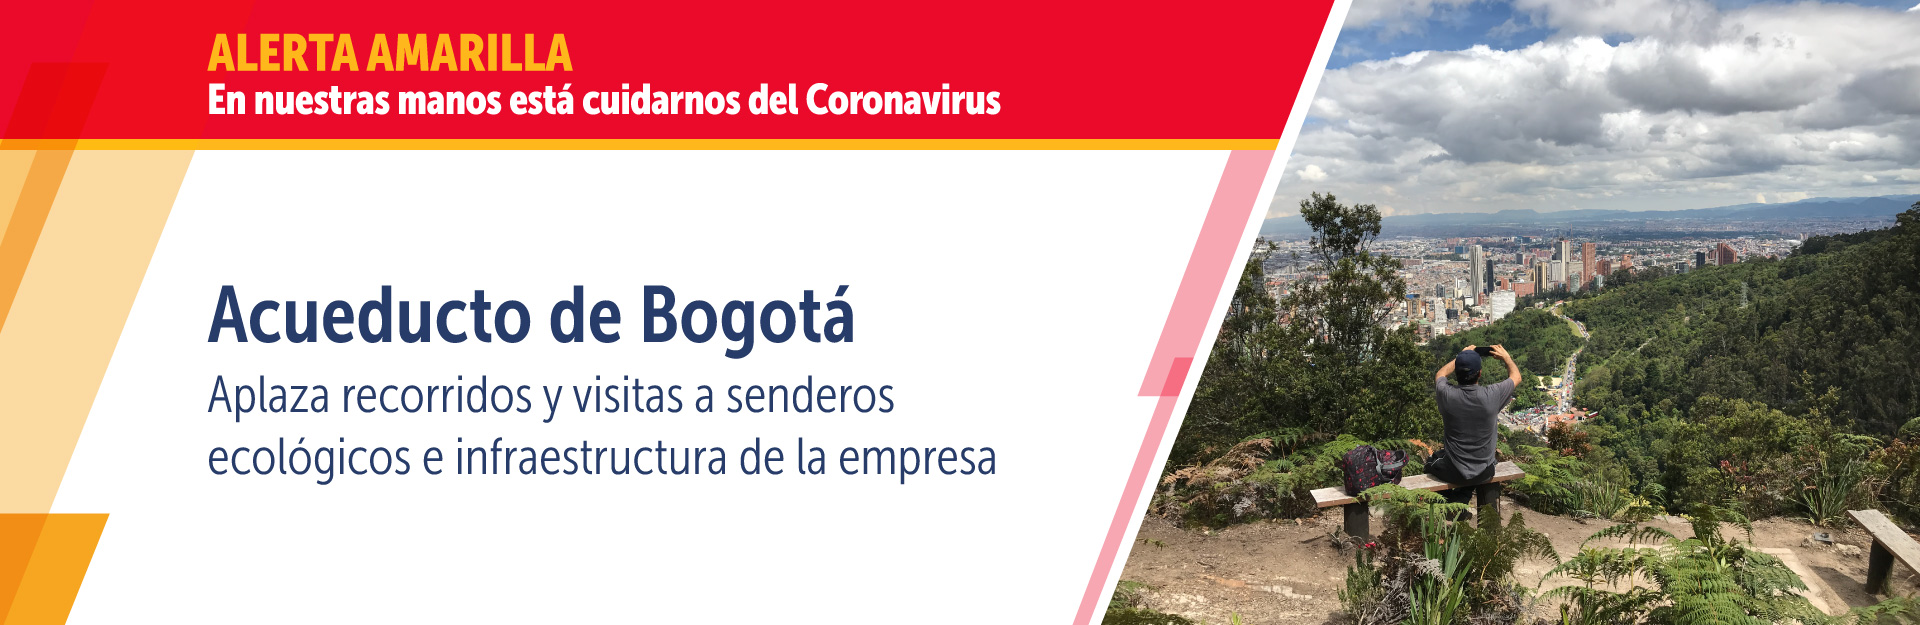 Acueducto de Bogotá suspende recorridos y visitas  a senderos ecológicos e infraestructura de la empresa